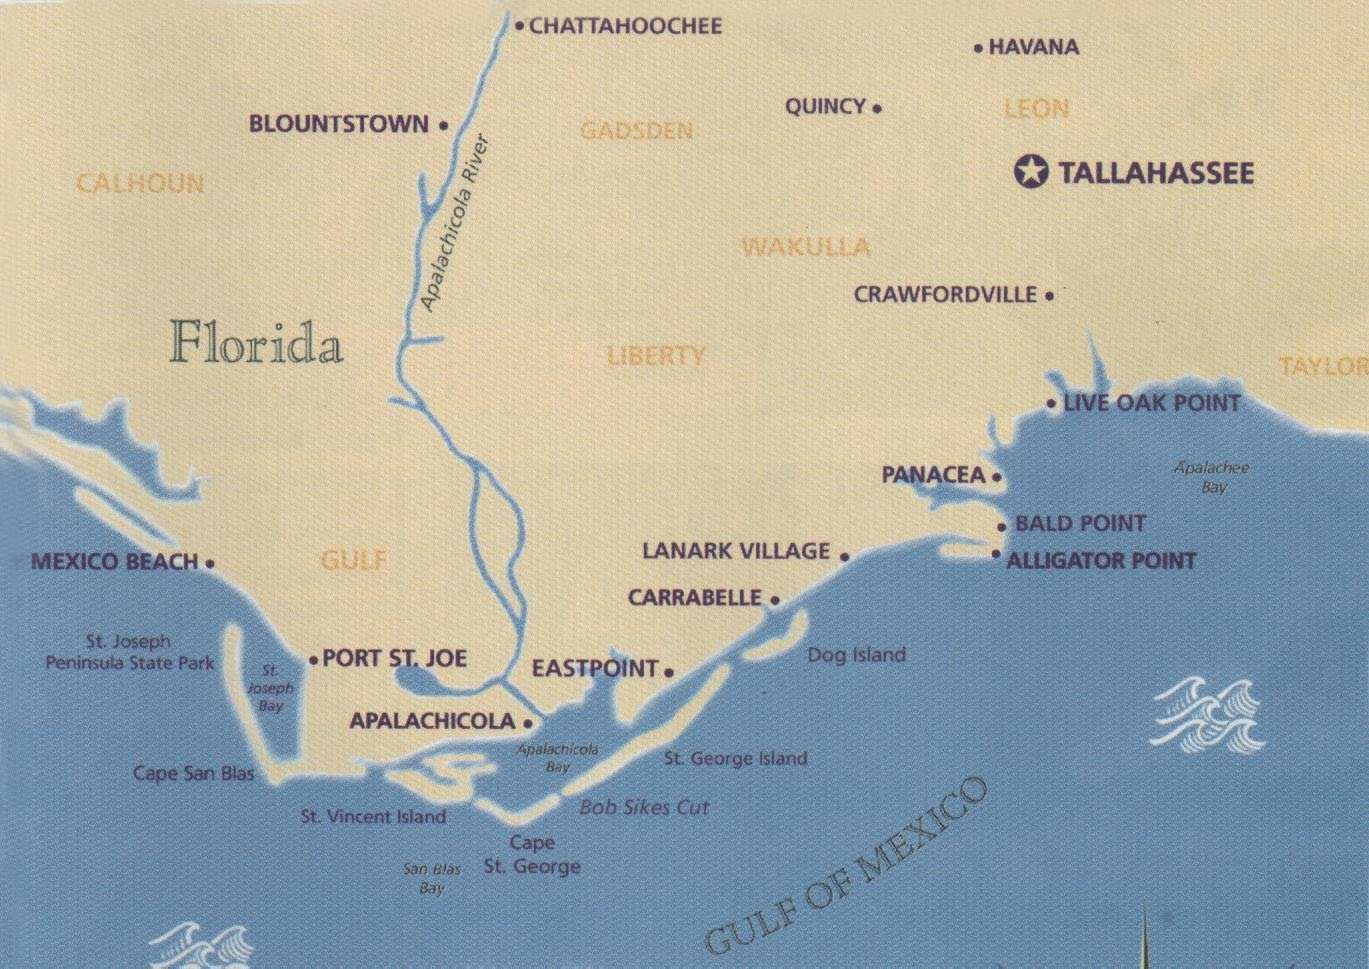 Coastal Gems Real Estate Carrabelle Fl St George Island Fl Carrabelle Florida Map 